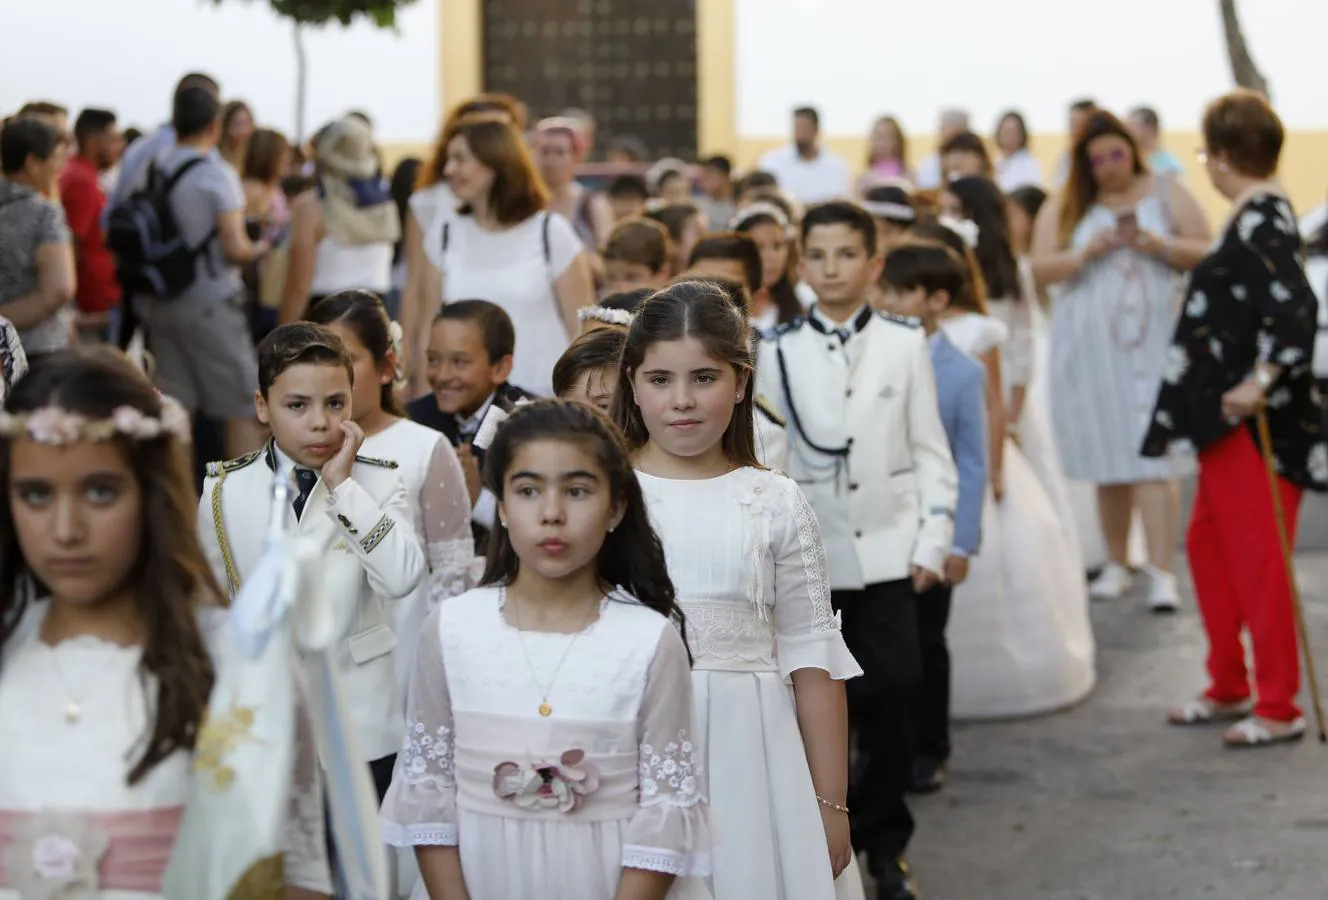 La procesión de San Vicente Ferrer en Córdoba, en imágenes